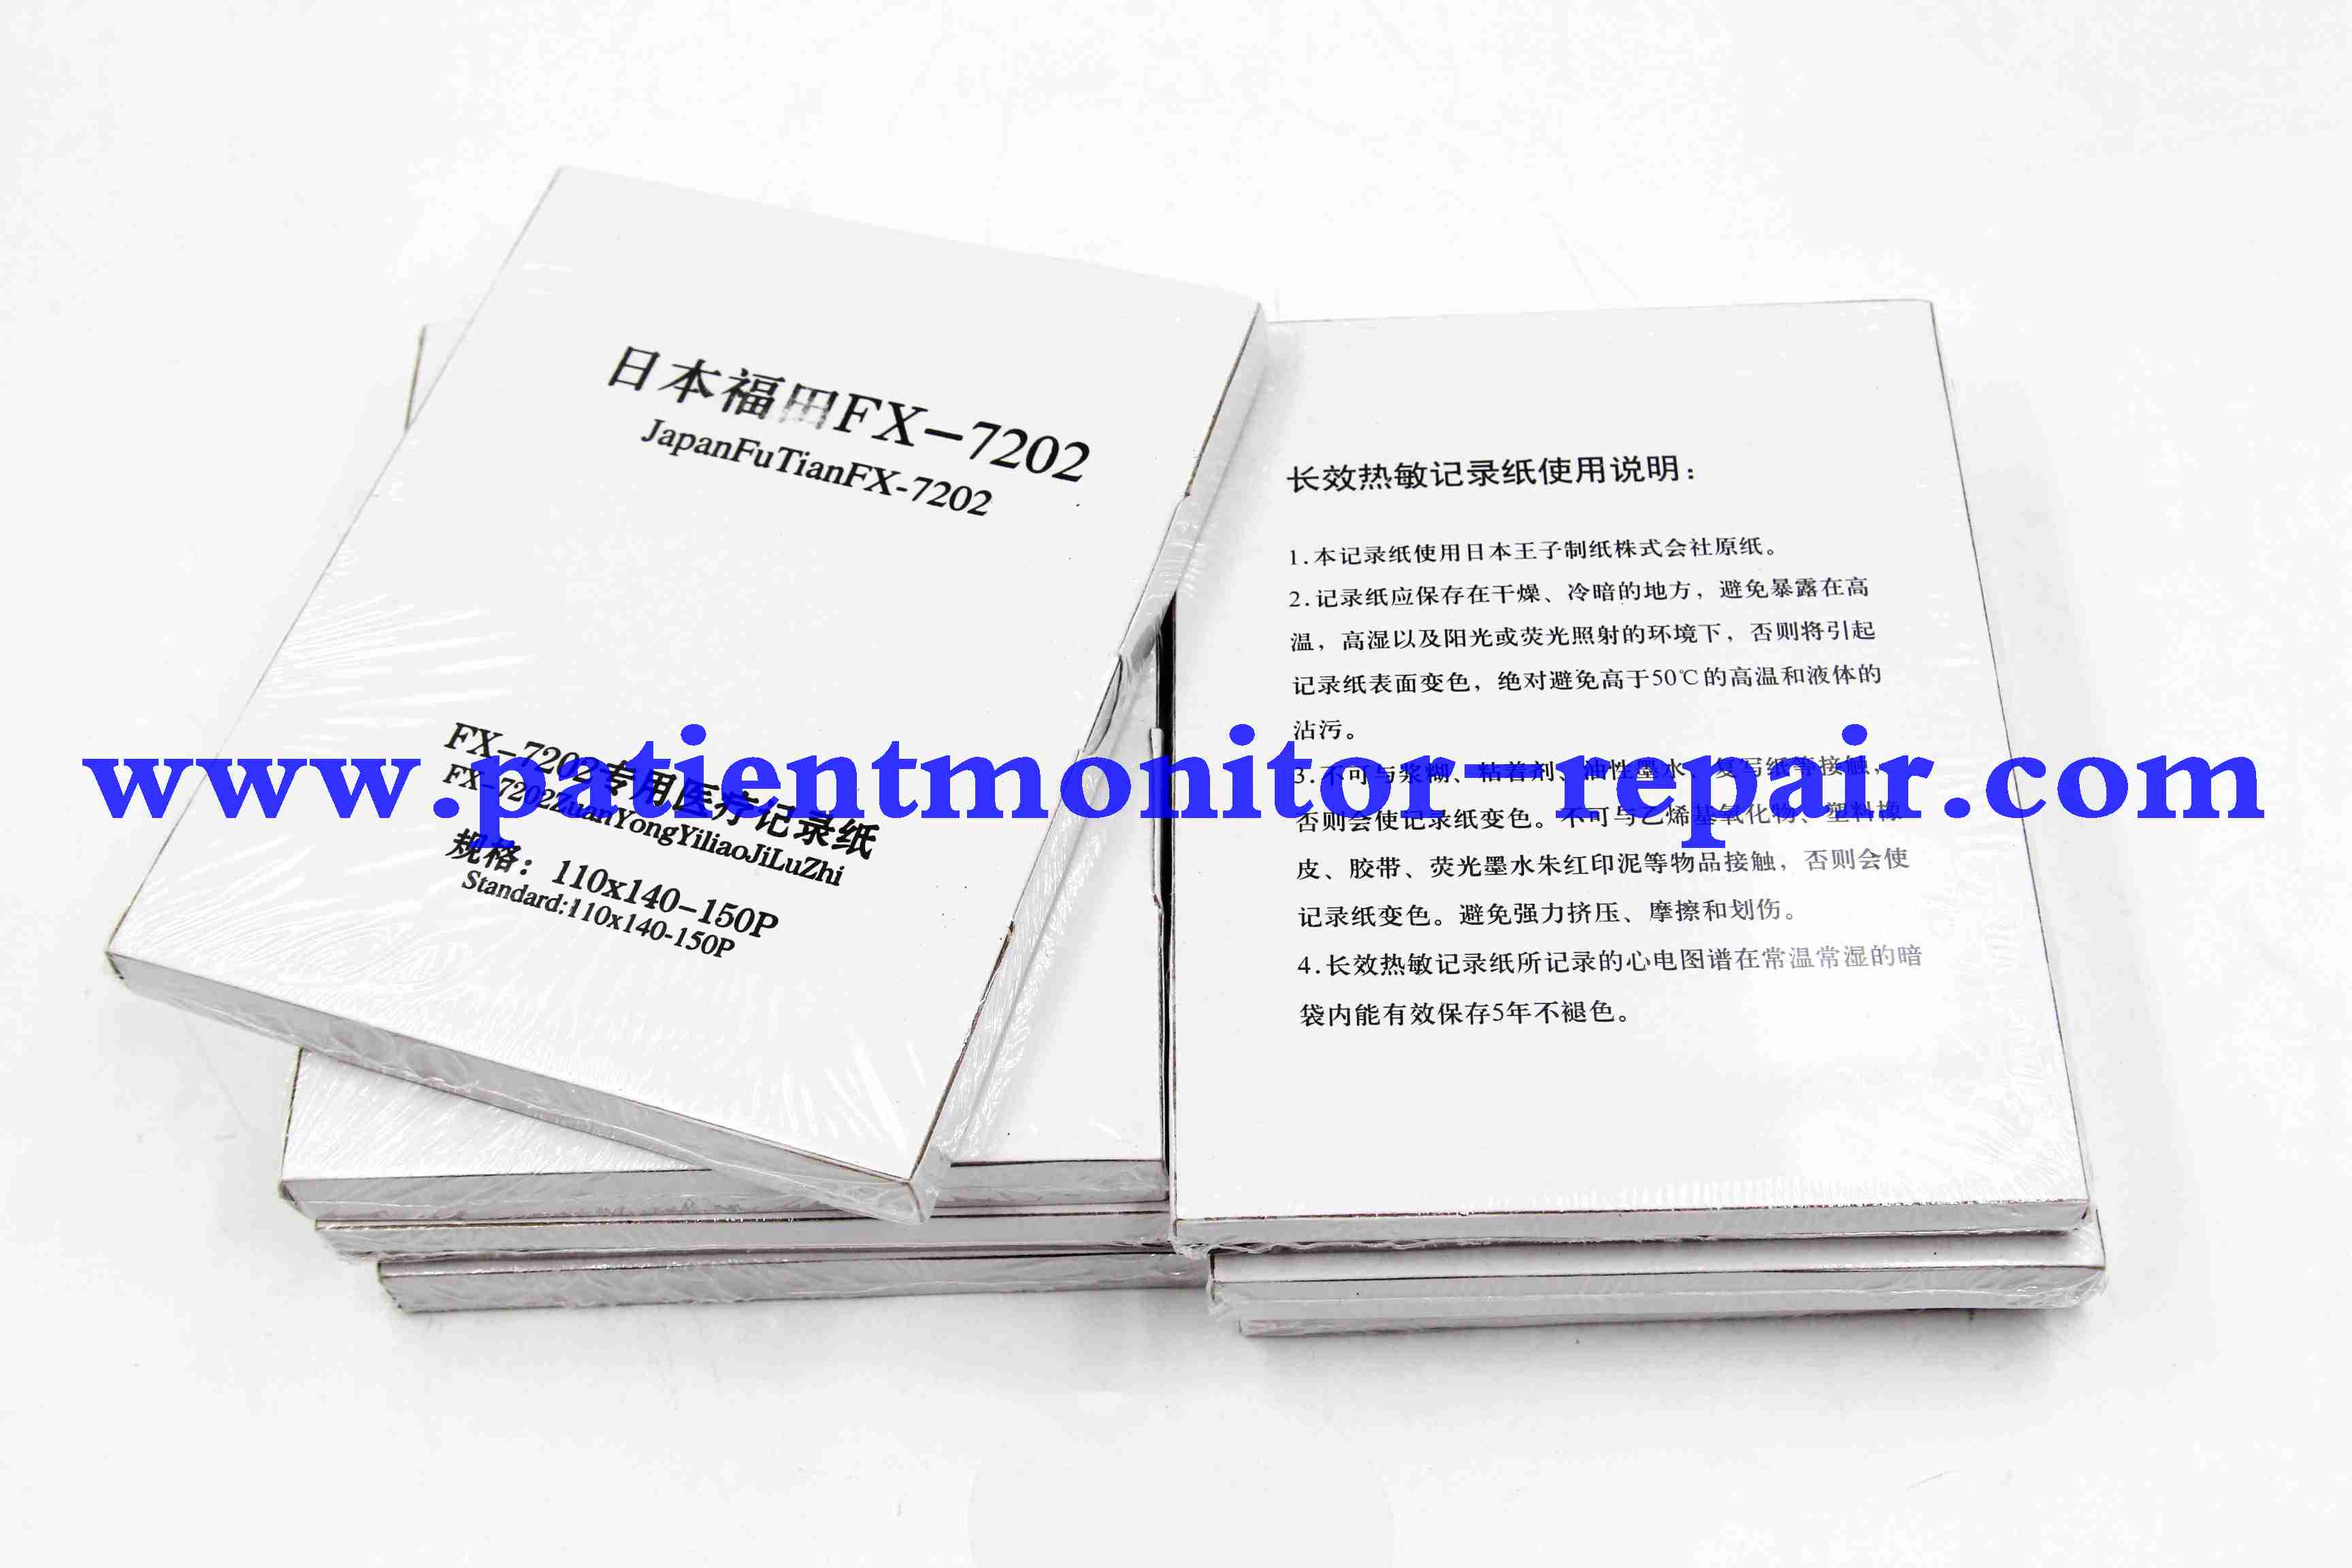 Japan FuTian FX-7202 Medical record paper standard:110x140-150P